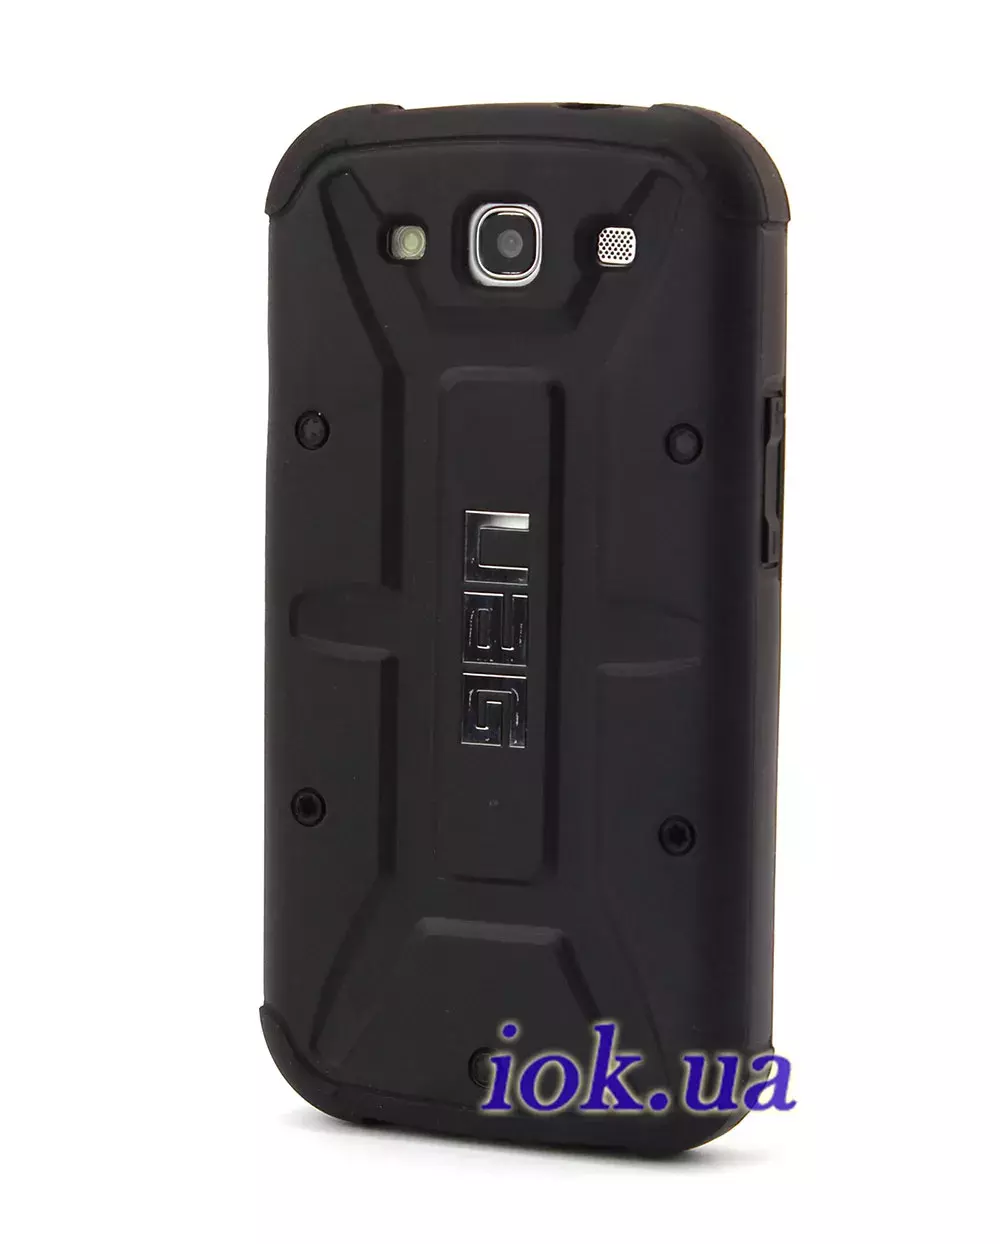 Противоударный чехол Urban Armor Gear для Galaxy S3, черный